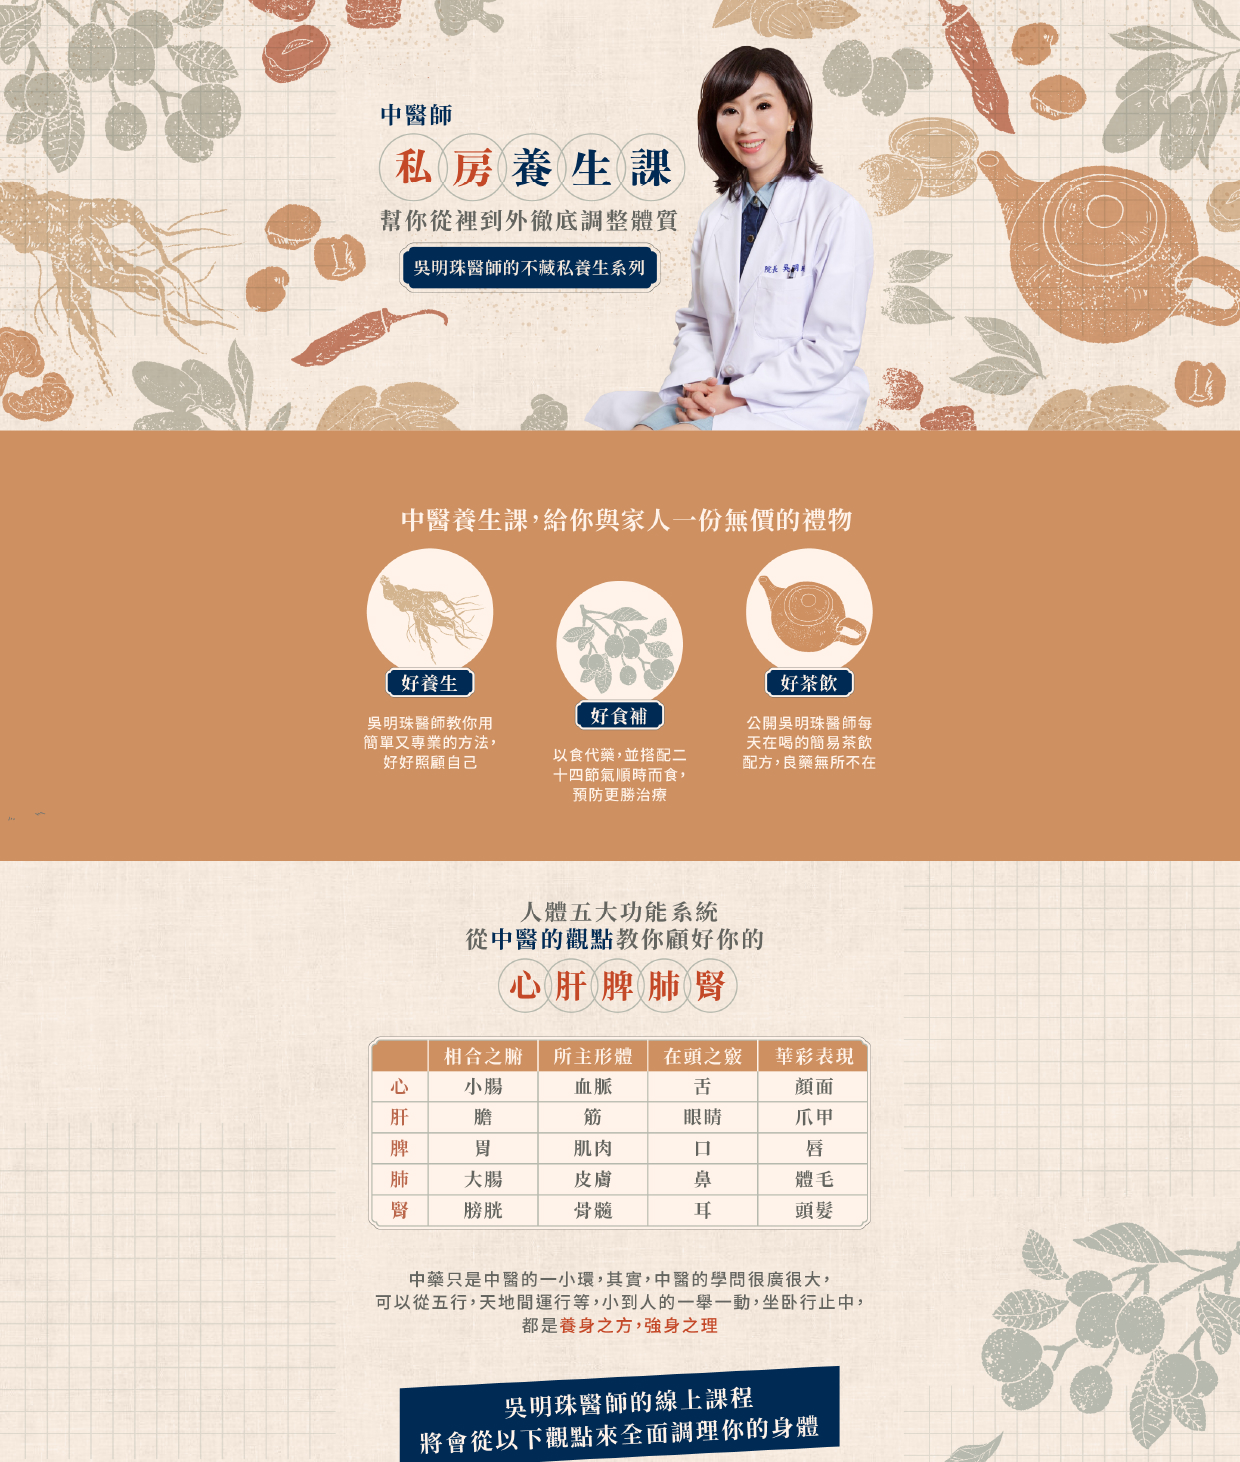 吳明珠中醫學院線上課程 線上課程平台推薦範例